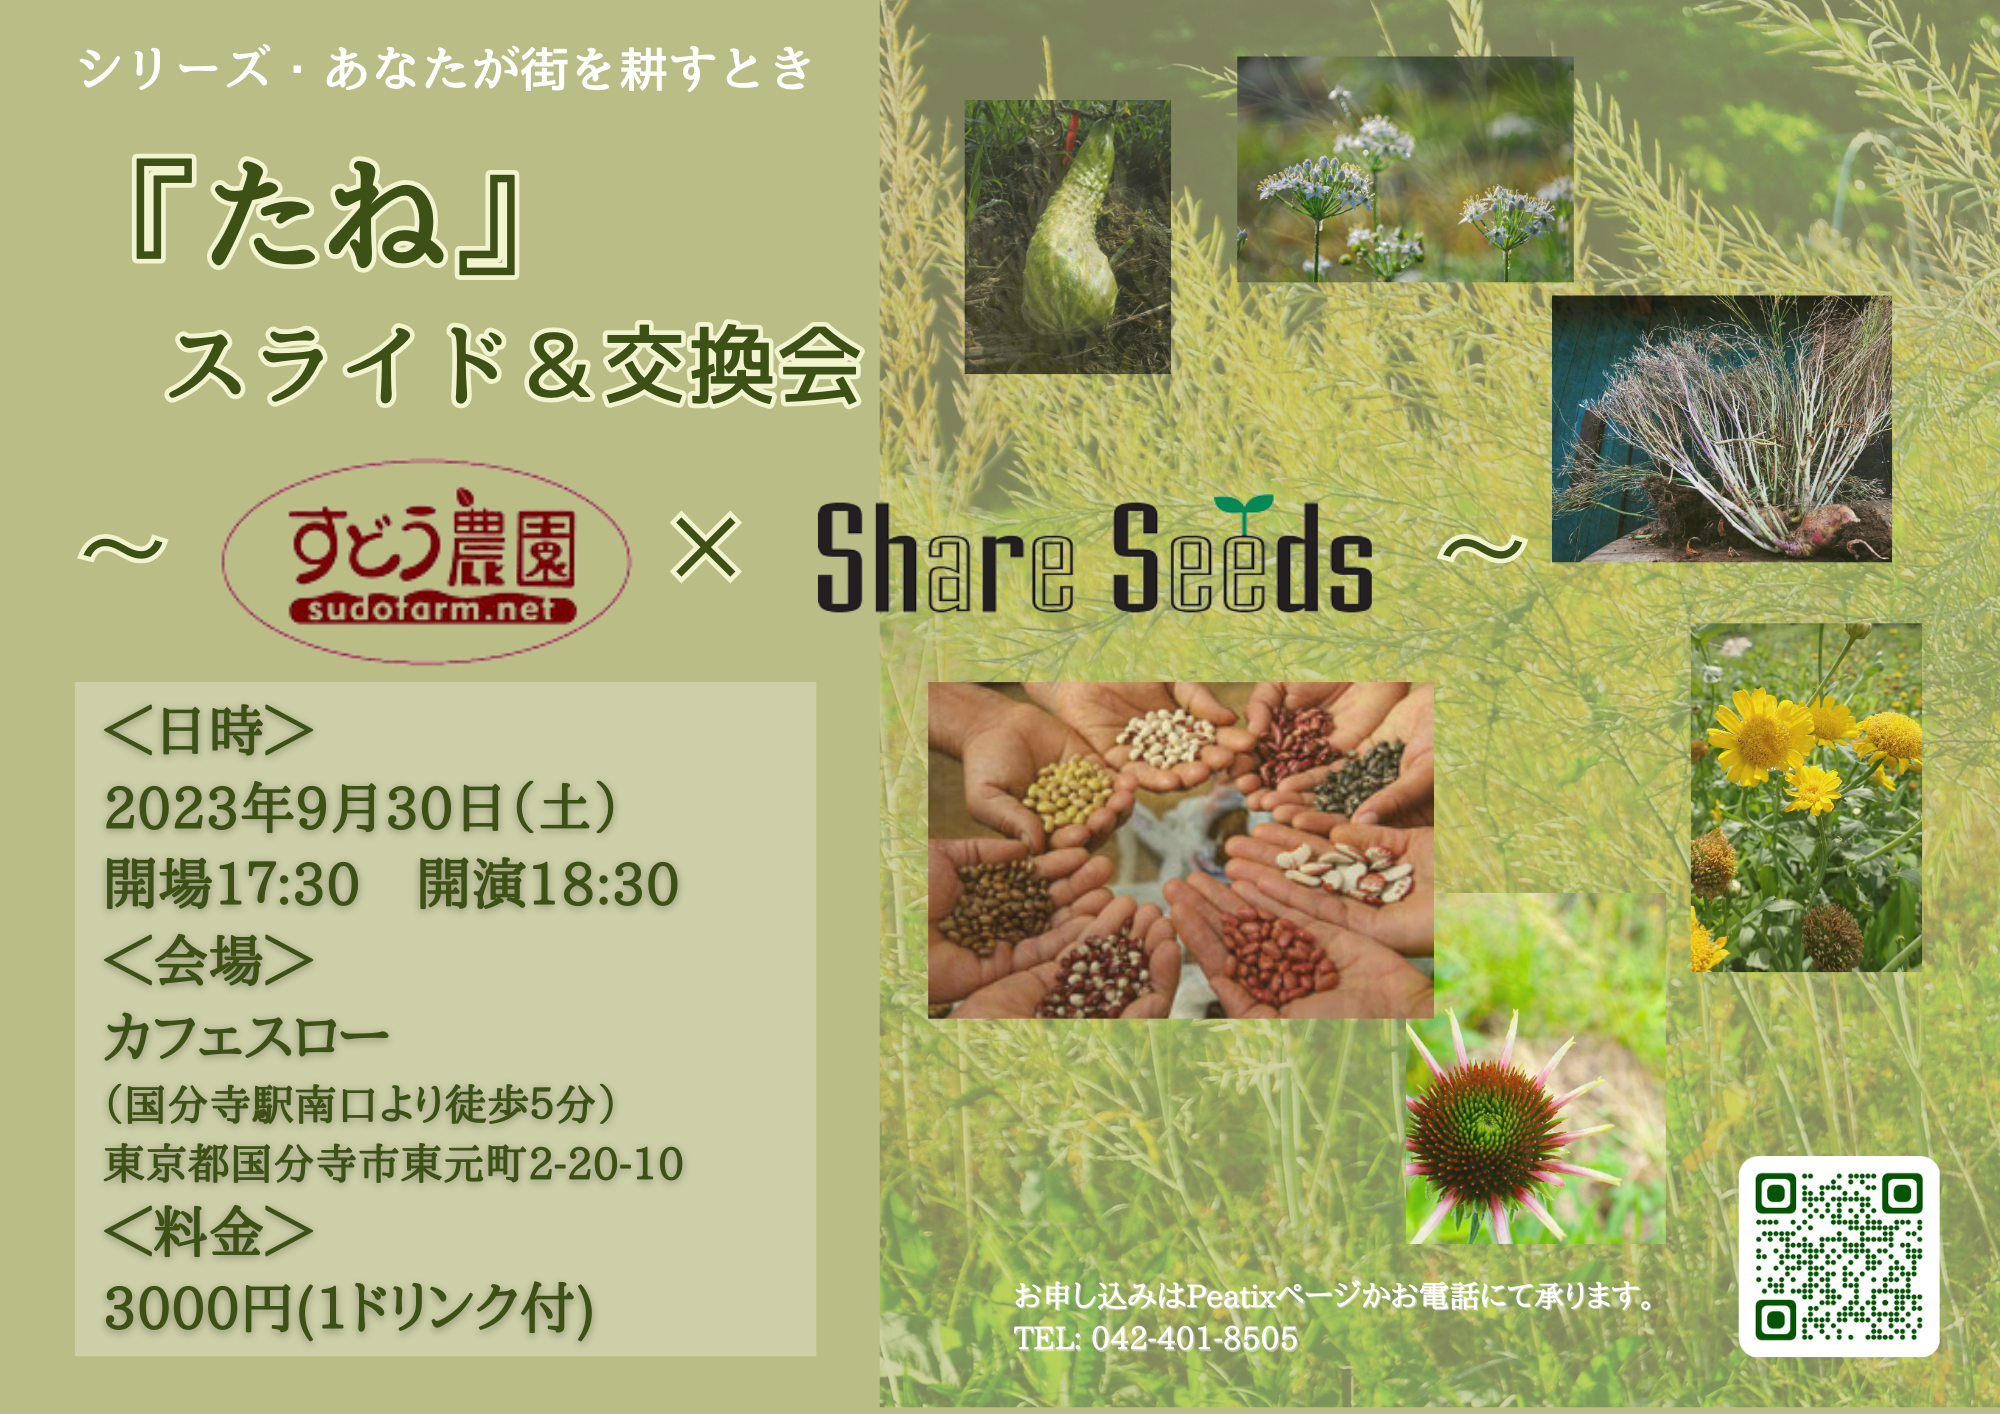 【延期】9/30(土) 『たね』スライドトーク＆交換会 ～すどう農園×Shere Seeds～